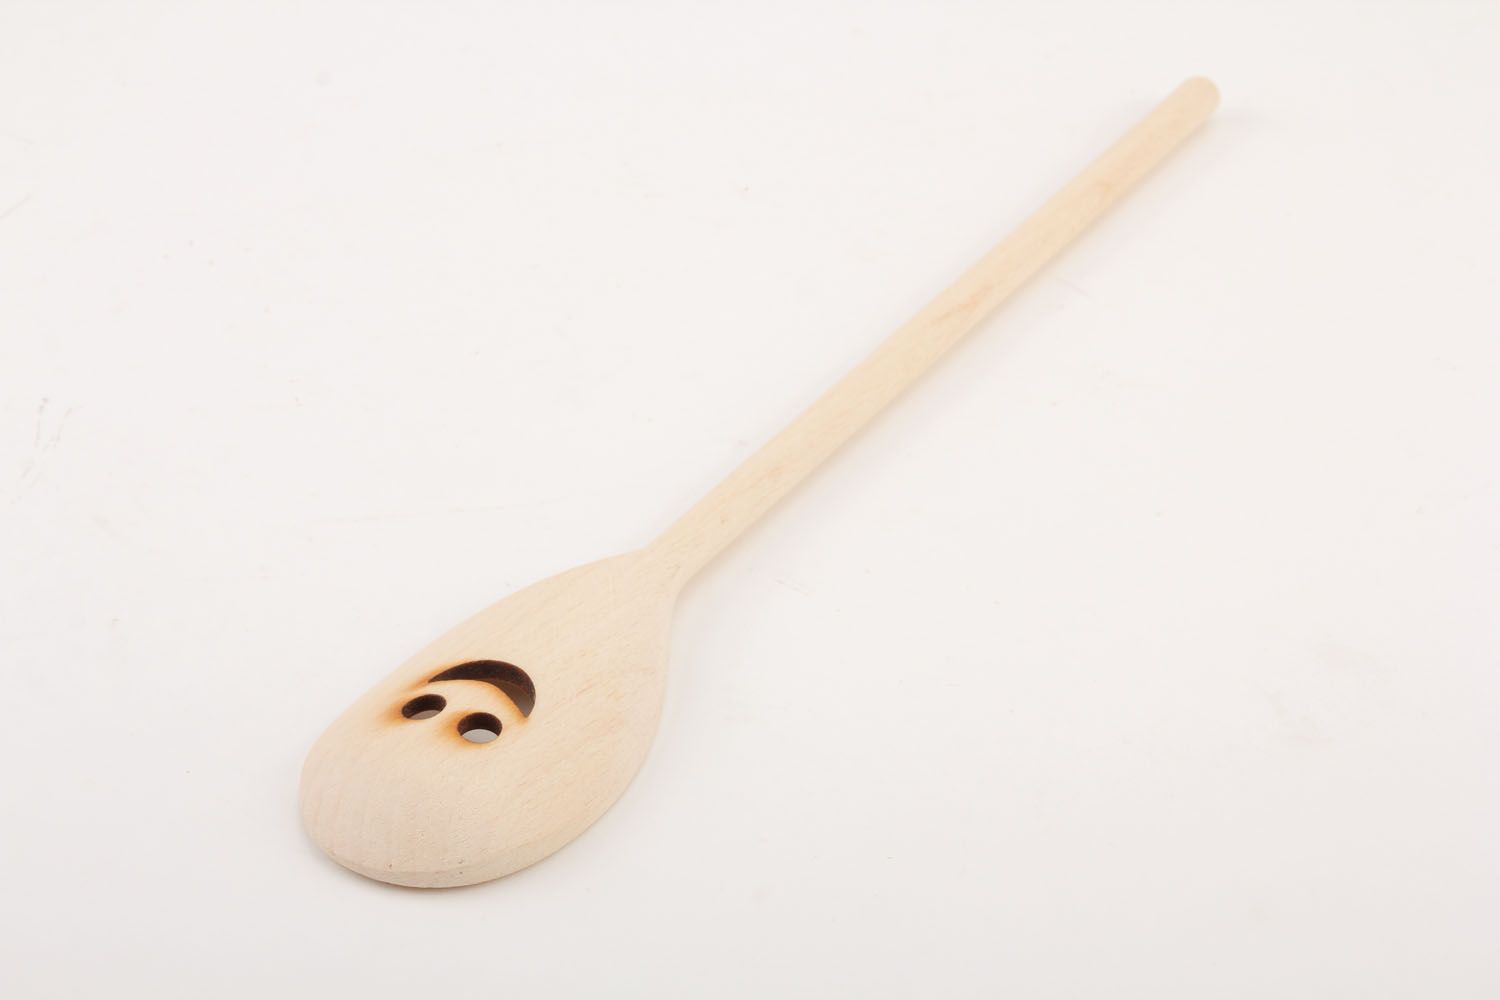 Wooden skimmer spoon photo 2